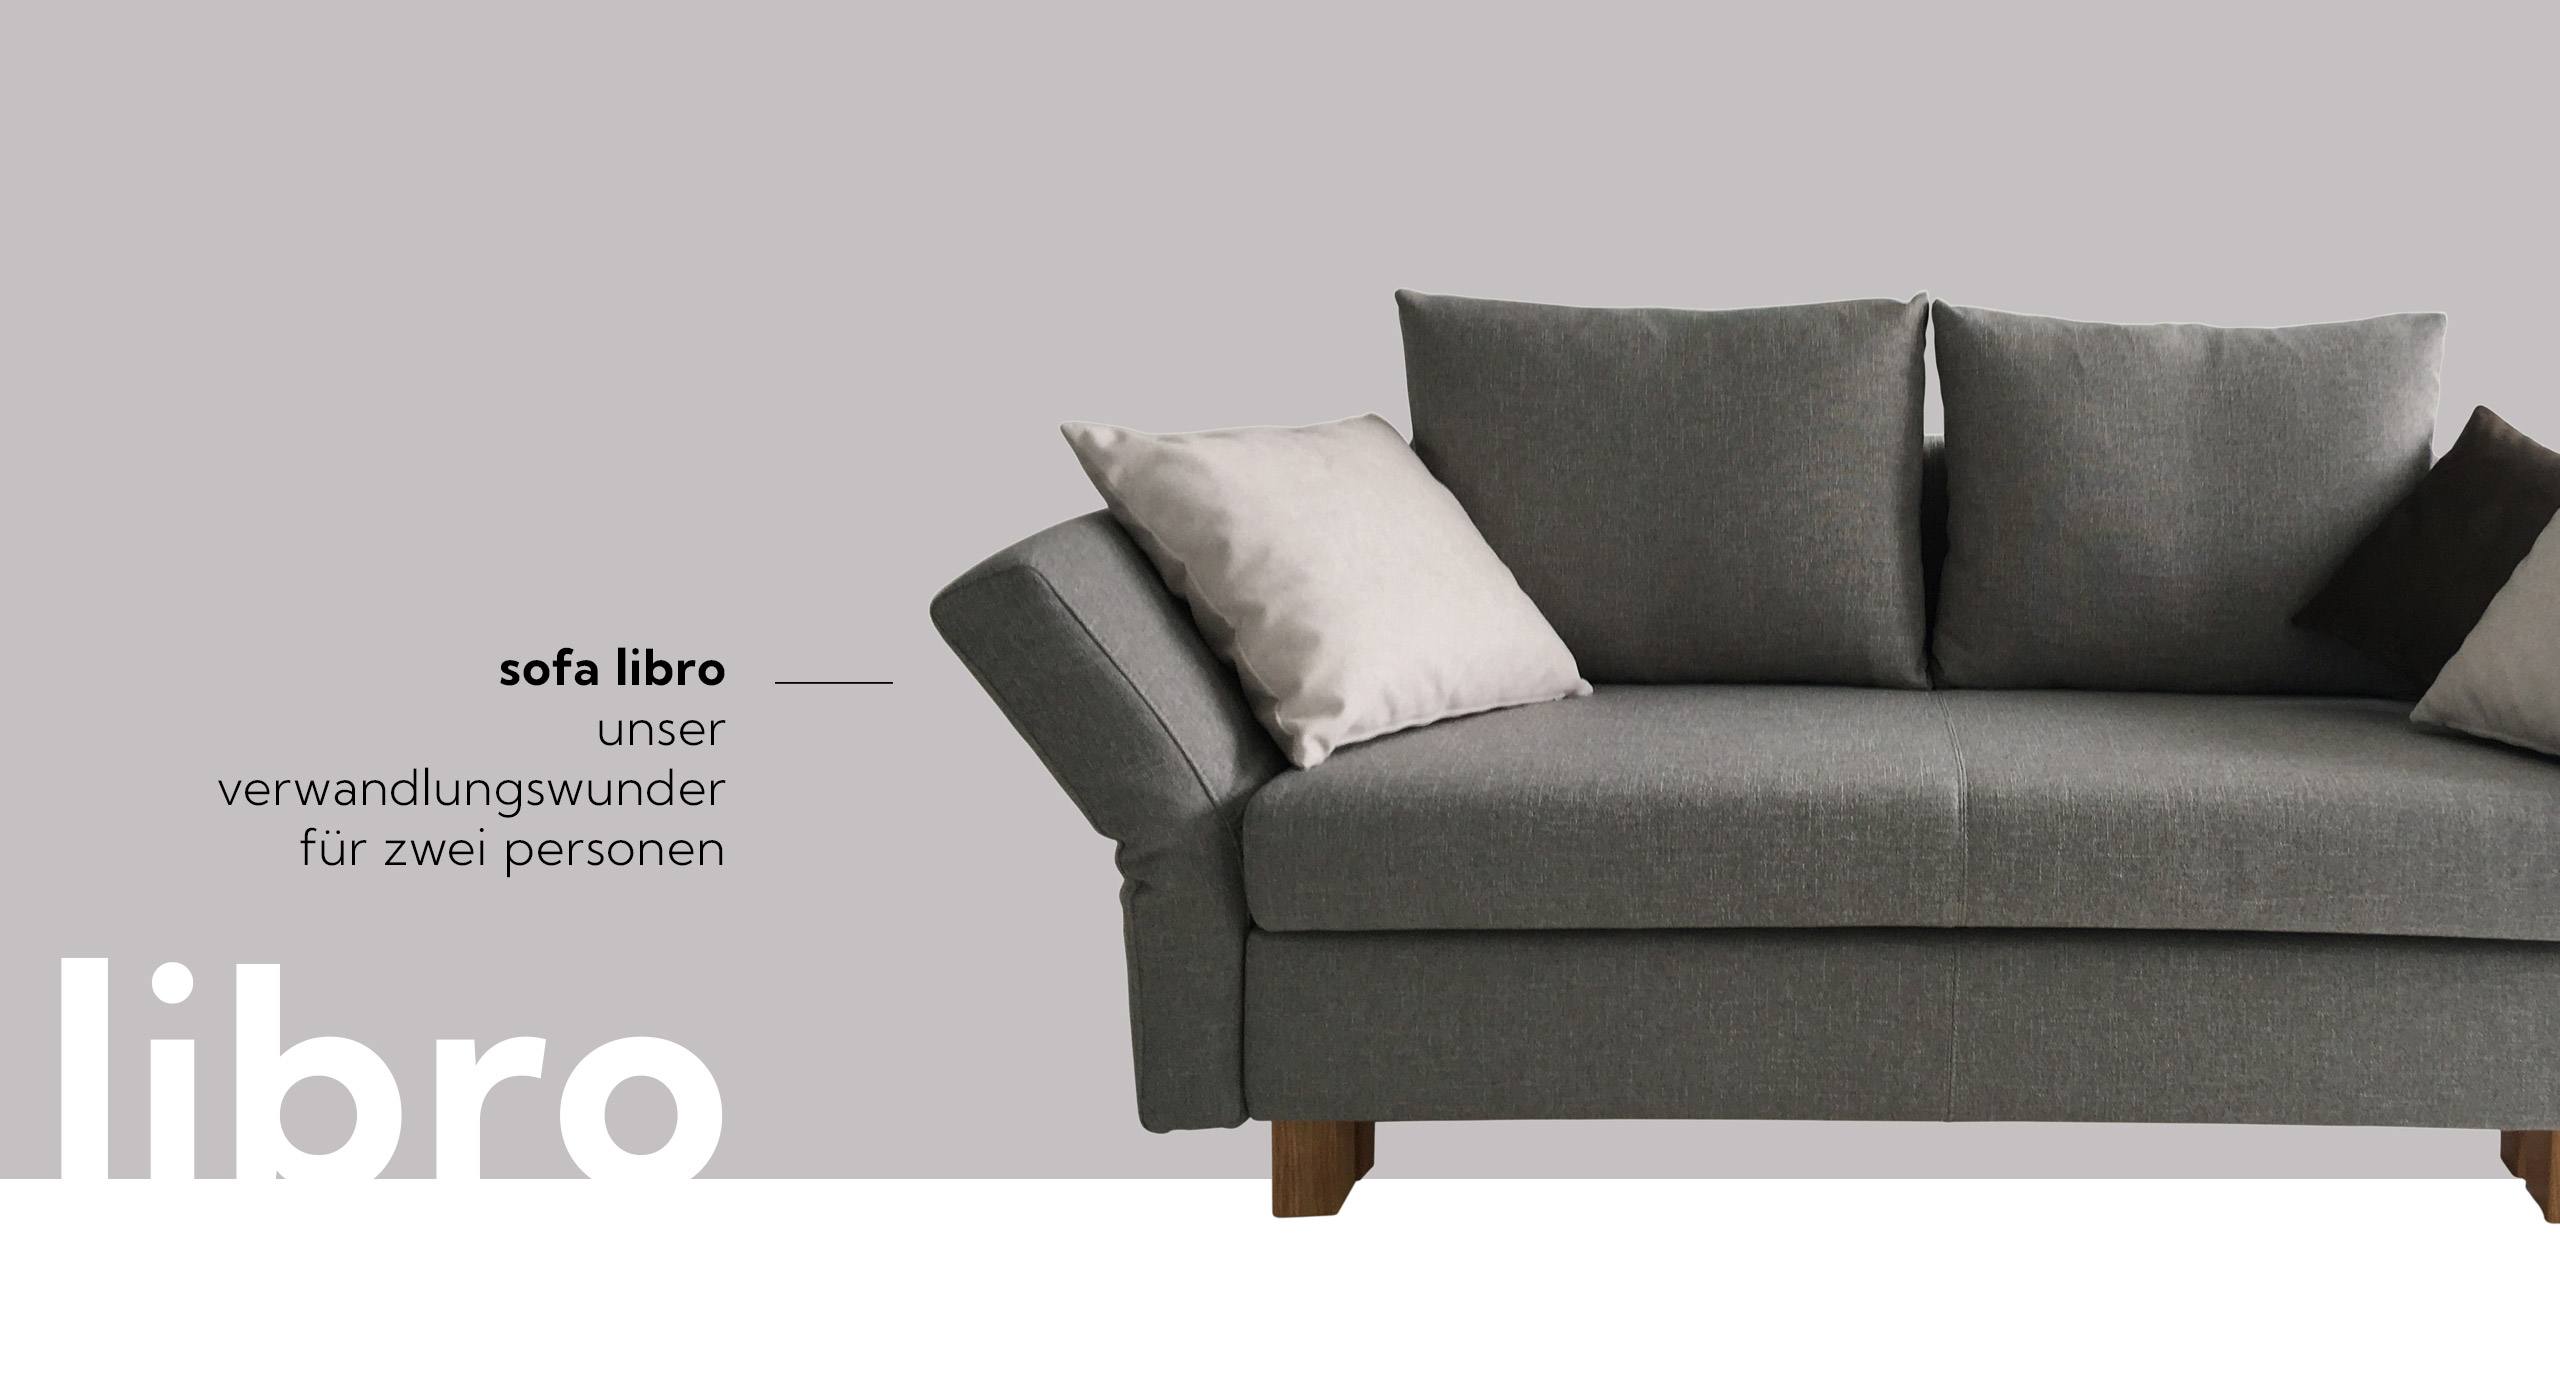 Unser Sofa libro lässt sich mit wenigen Handgriffen verwandeln: von der Couch zum Schlafsofa – und zurück. 